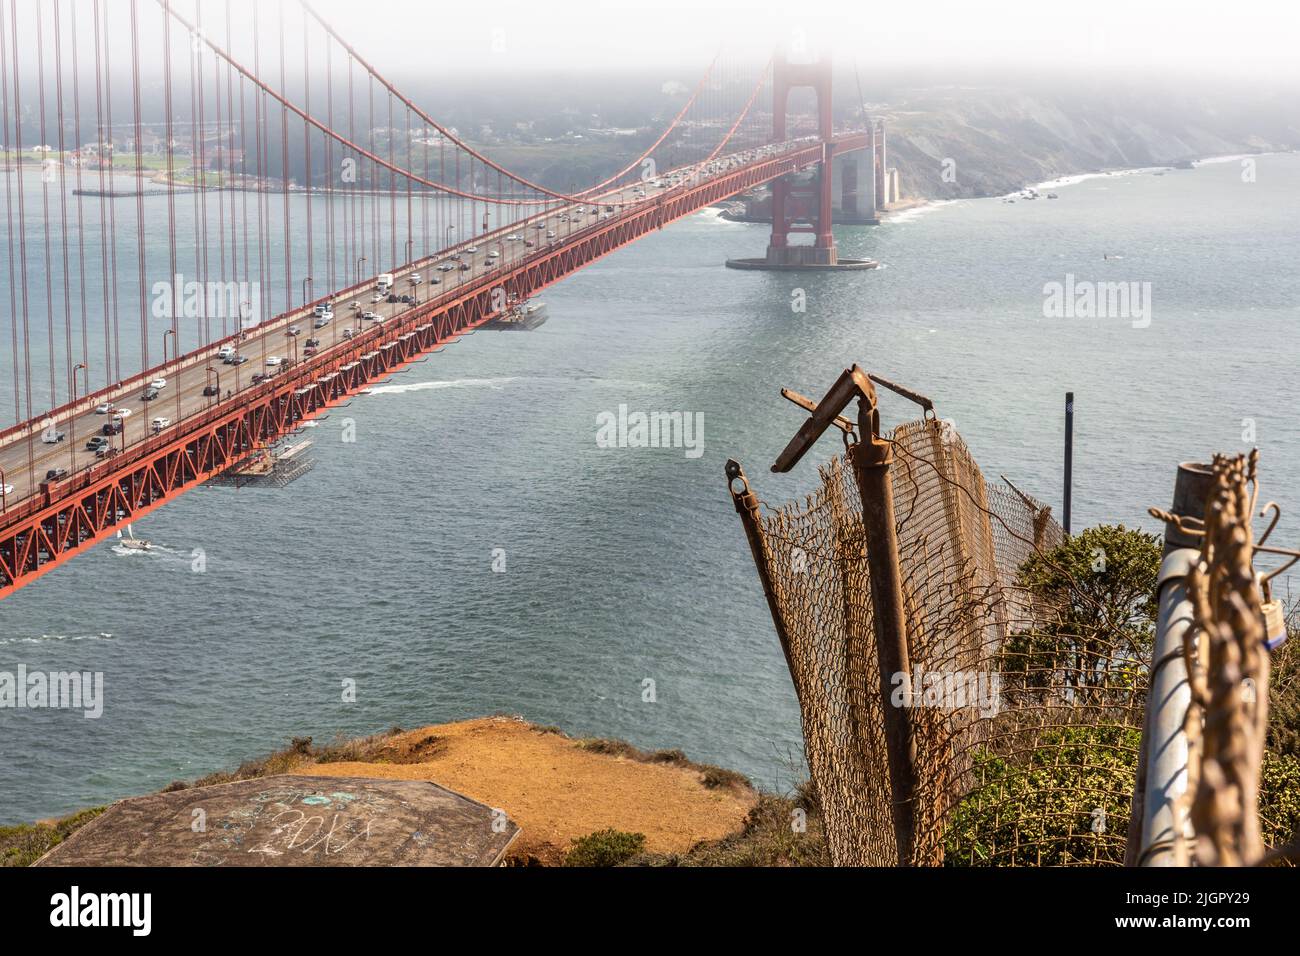 Il Golden Gate Bridge è stato preso in alto catturando una fence dilapidata con dettagli suggestivi mentre una barca a vela passa sotto in un pomeriggio estivo. Foto Stock